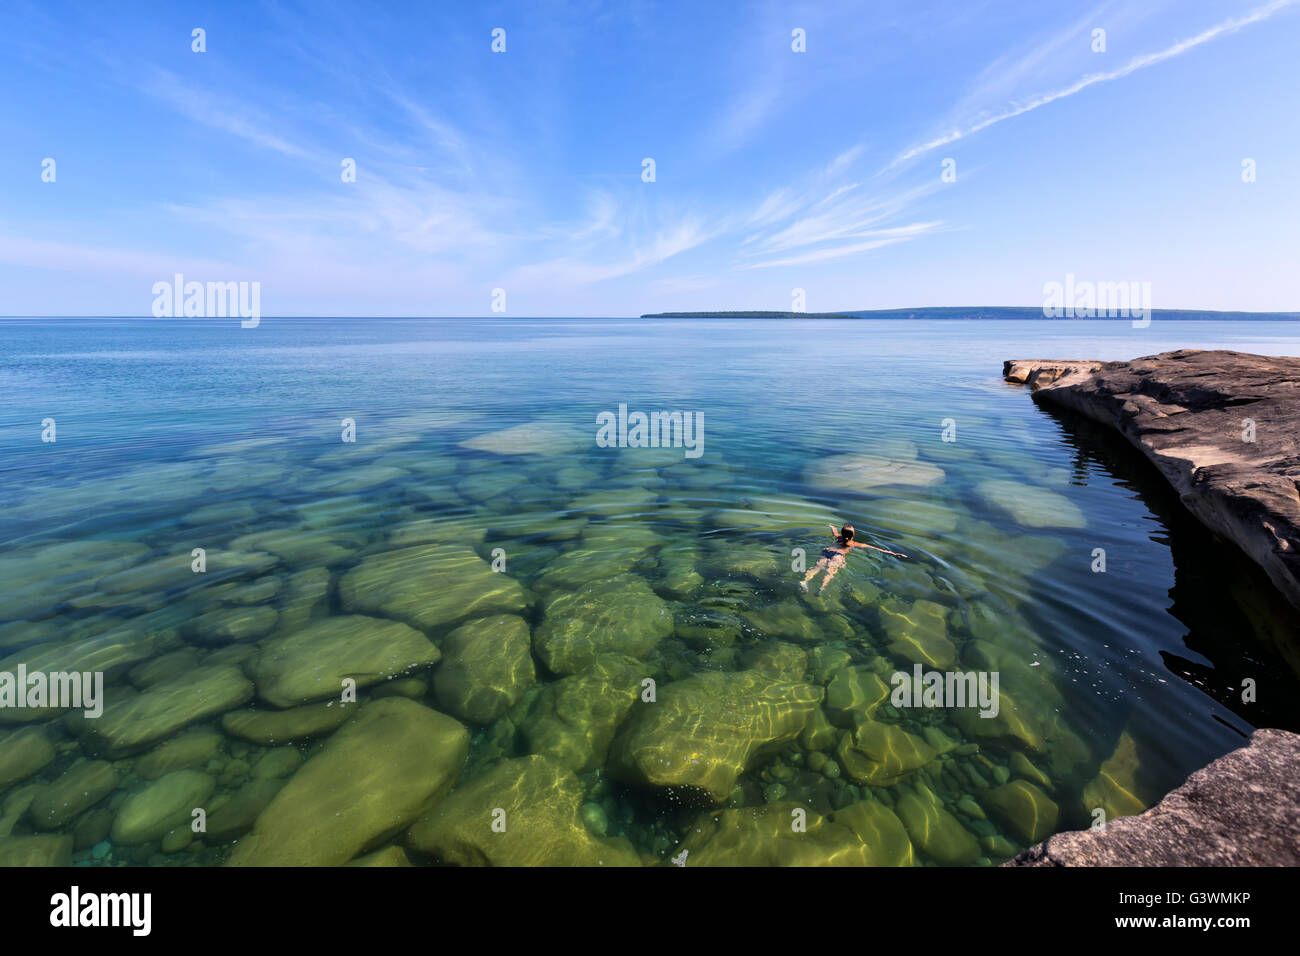 Une fille nage dans le lac Supérieur dans le nord de la péninsule du lac Michigan. Les roches sont visibles à travers le verre, comme les eaux vierges Banque D'Images